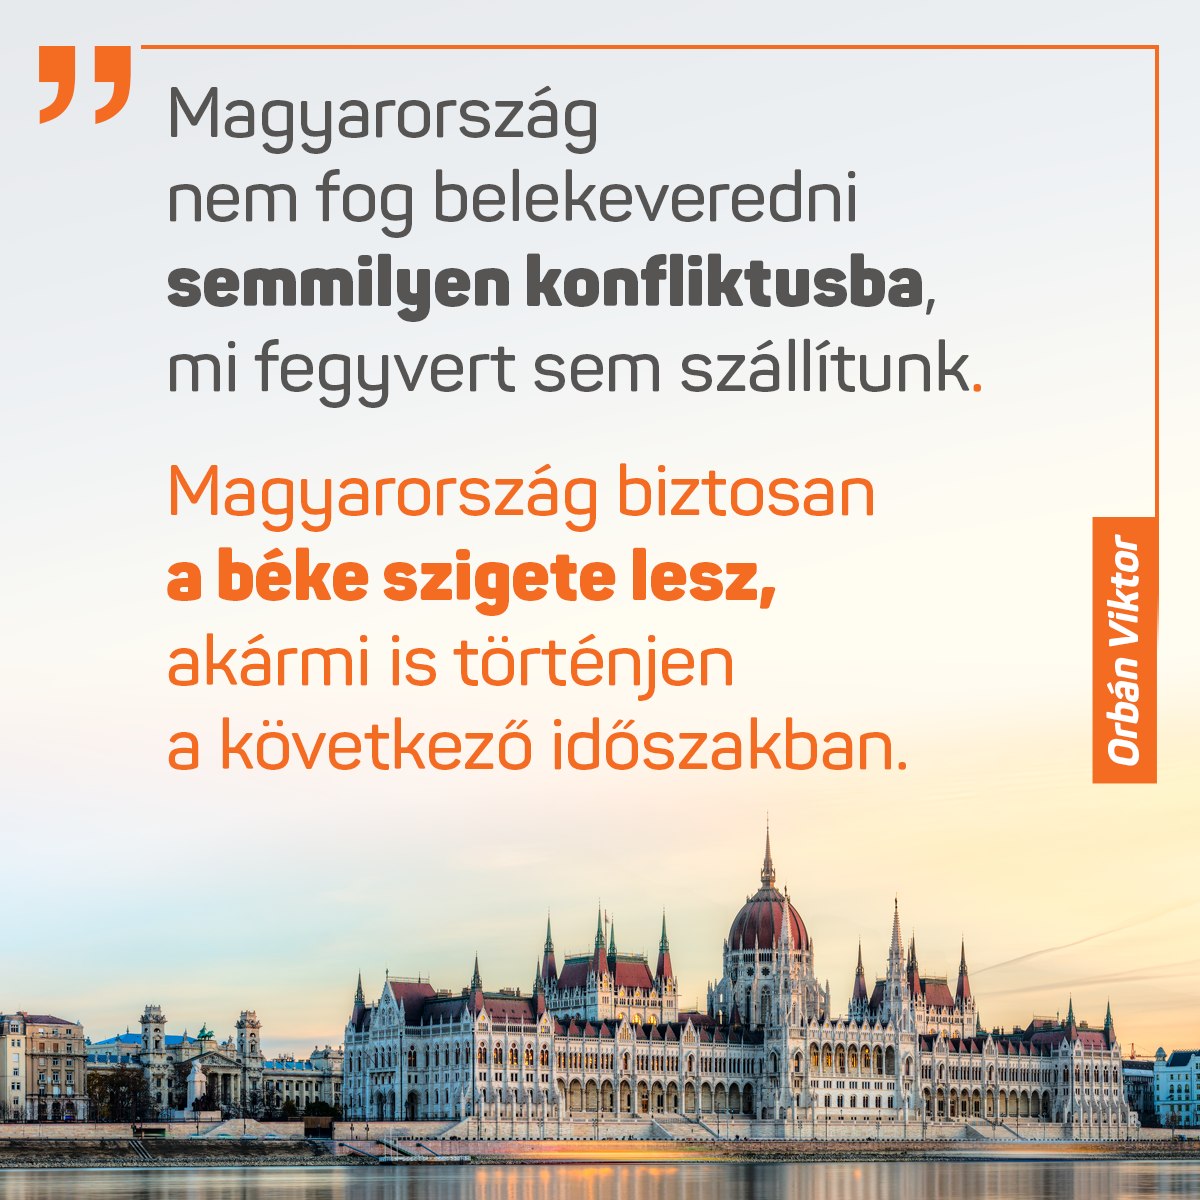 Magyarország nem fog belekeveredni semmilyen konfliktusba, mi fegyvert sem szállítunk. Magyarország biztosan a béke szigete lesz, akármi is történjen a következő időszakban.